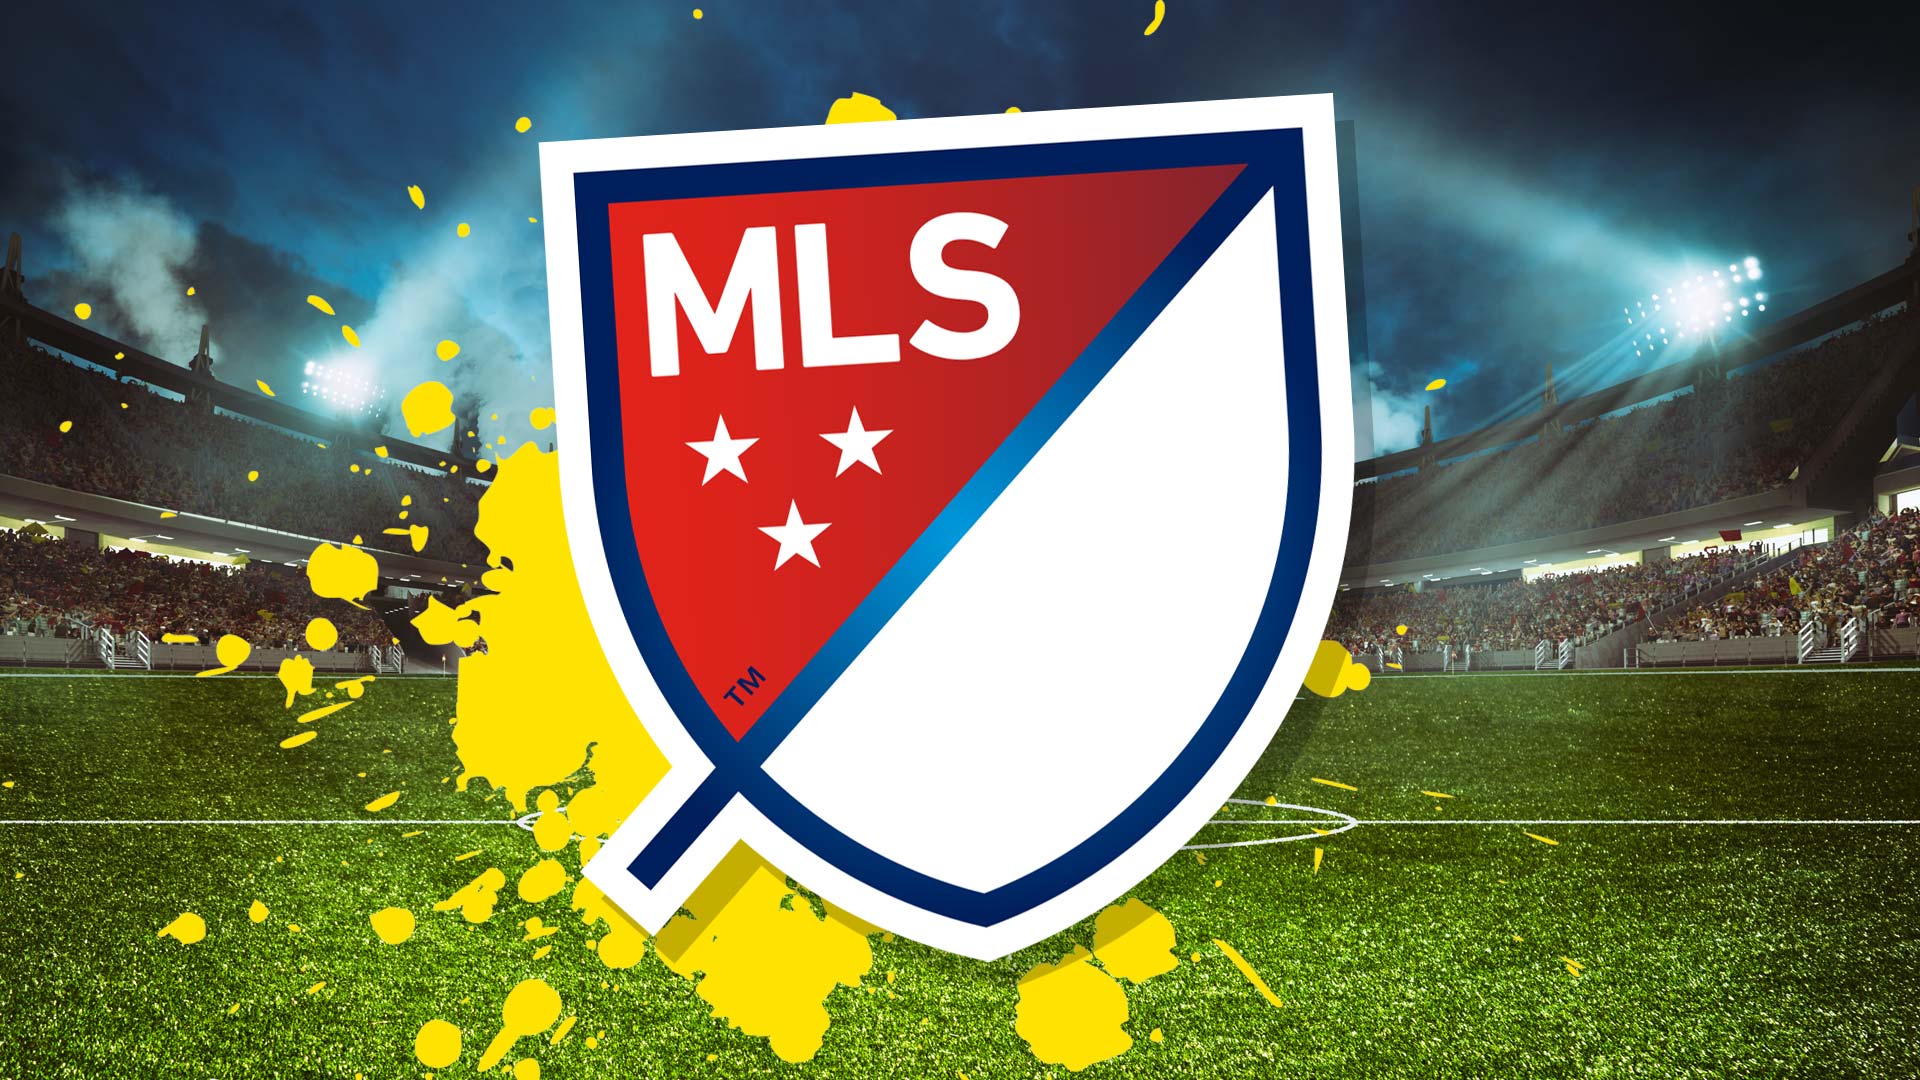 MLS badge